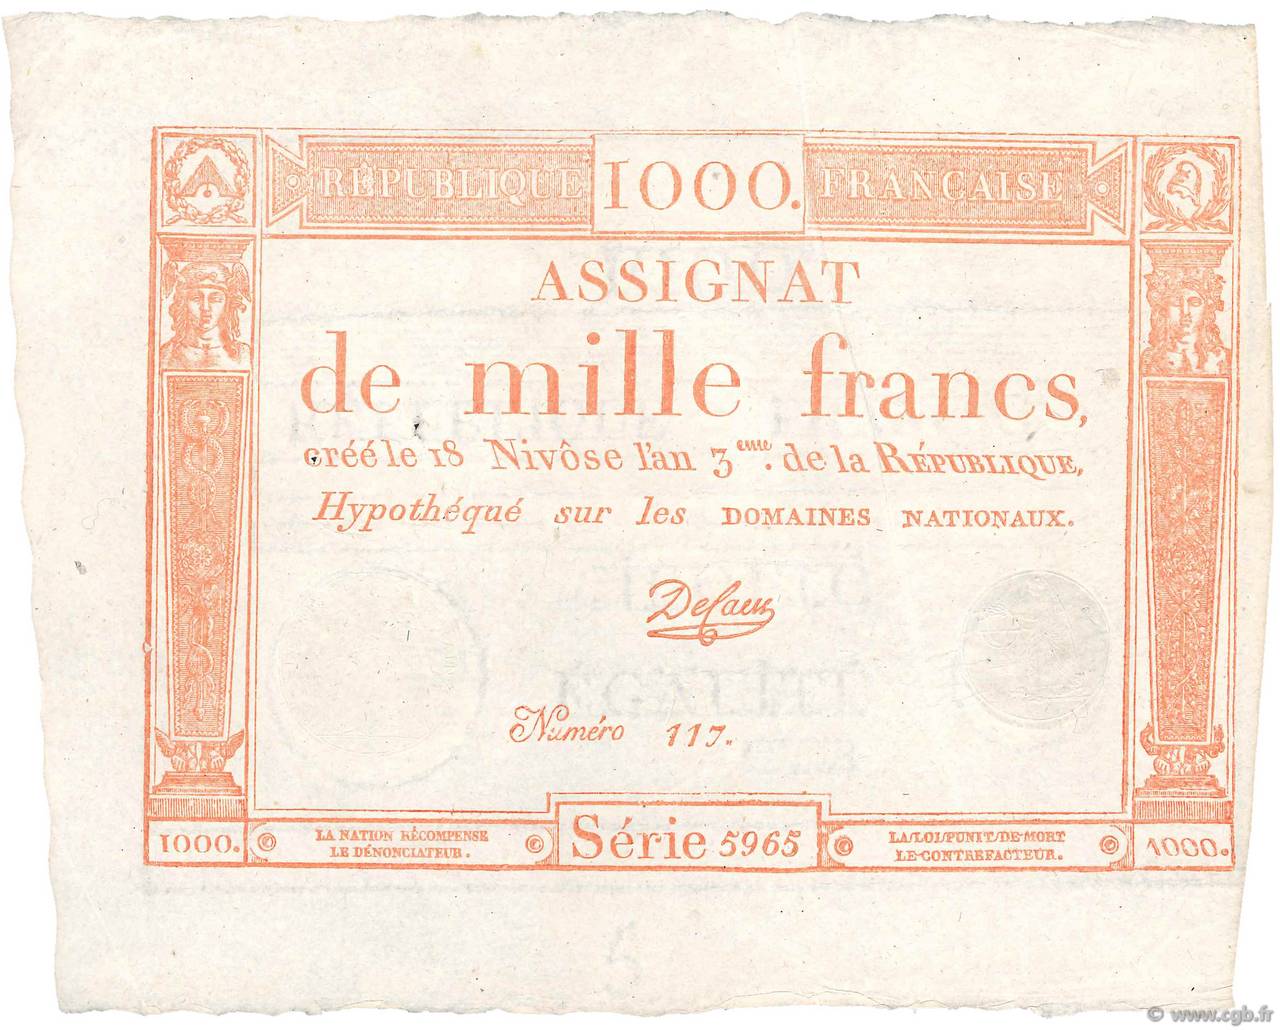 1000 Francs FRANCE  1795 Ass.50a XF